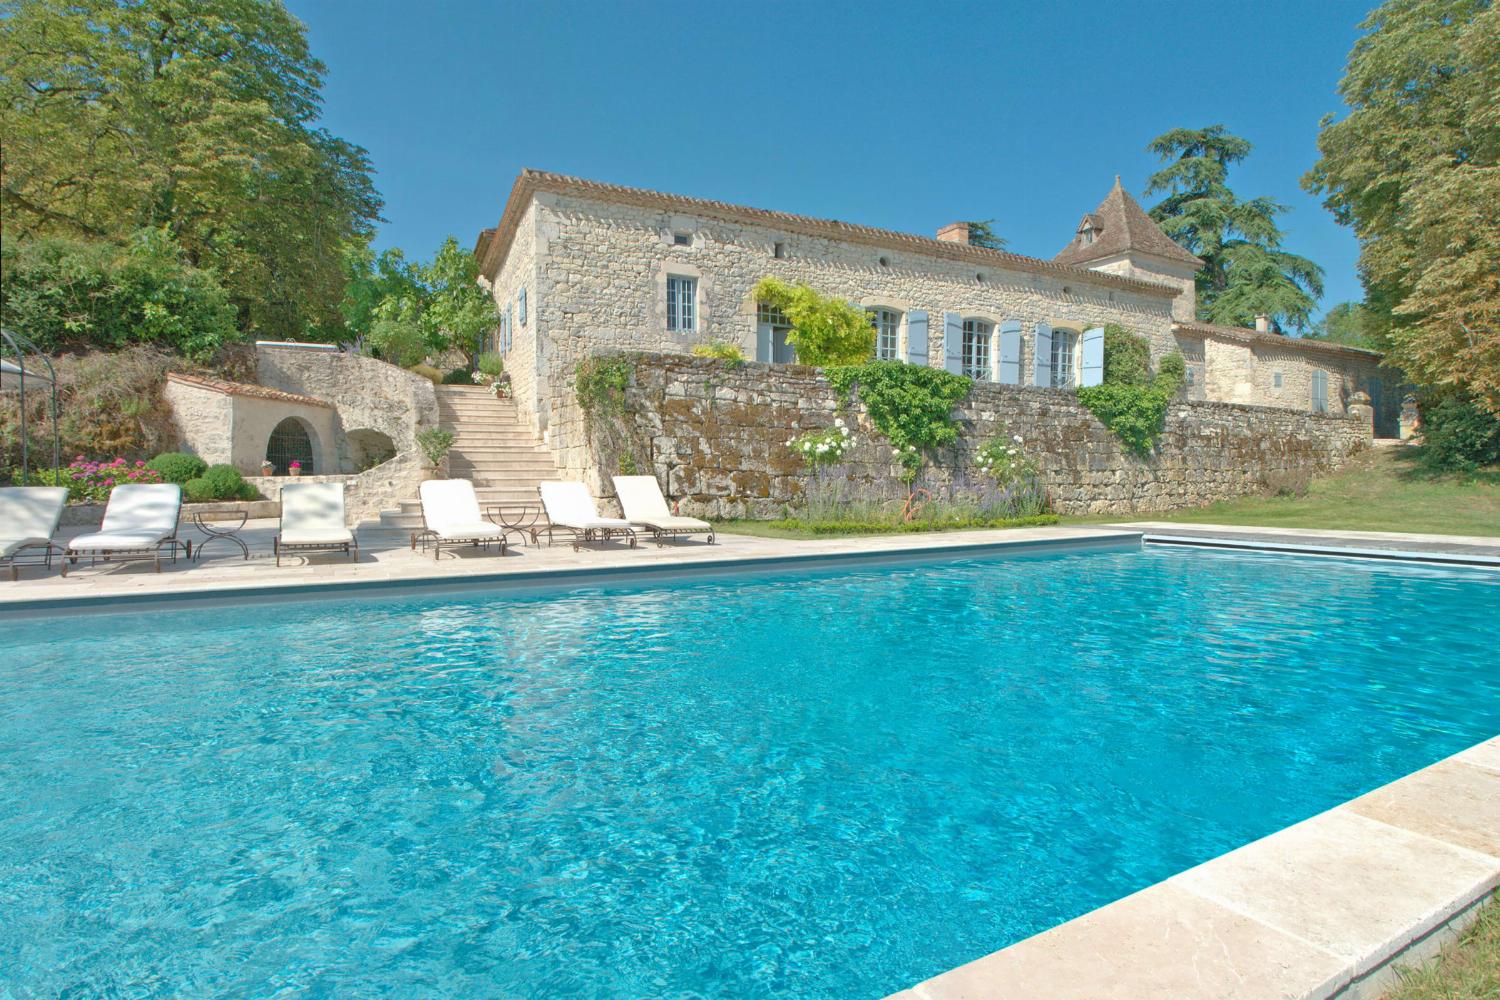 Location de vacances dans le Tarn-en-Garonne avec piscine privée chauffée